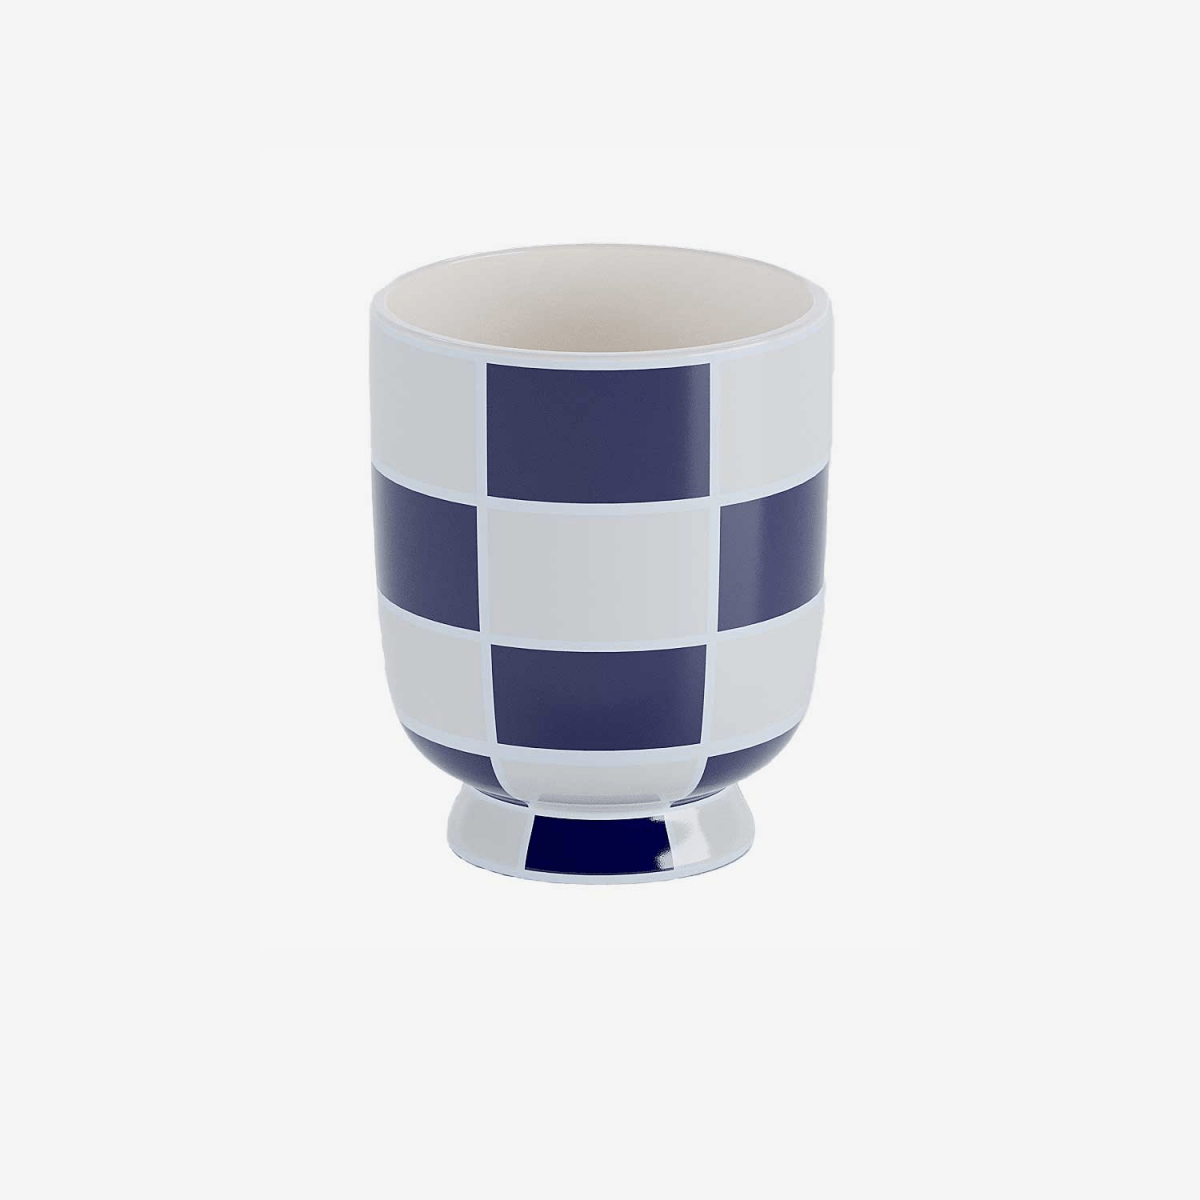 Ce vase, avec sa céramique à damier bleu marine, donne un style géométrique très moderne